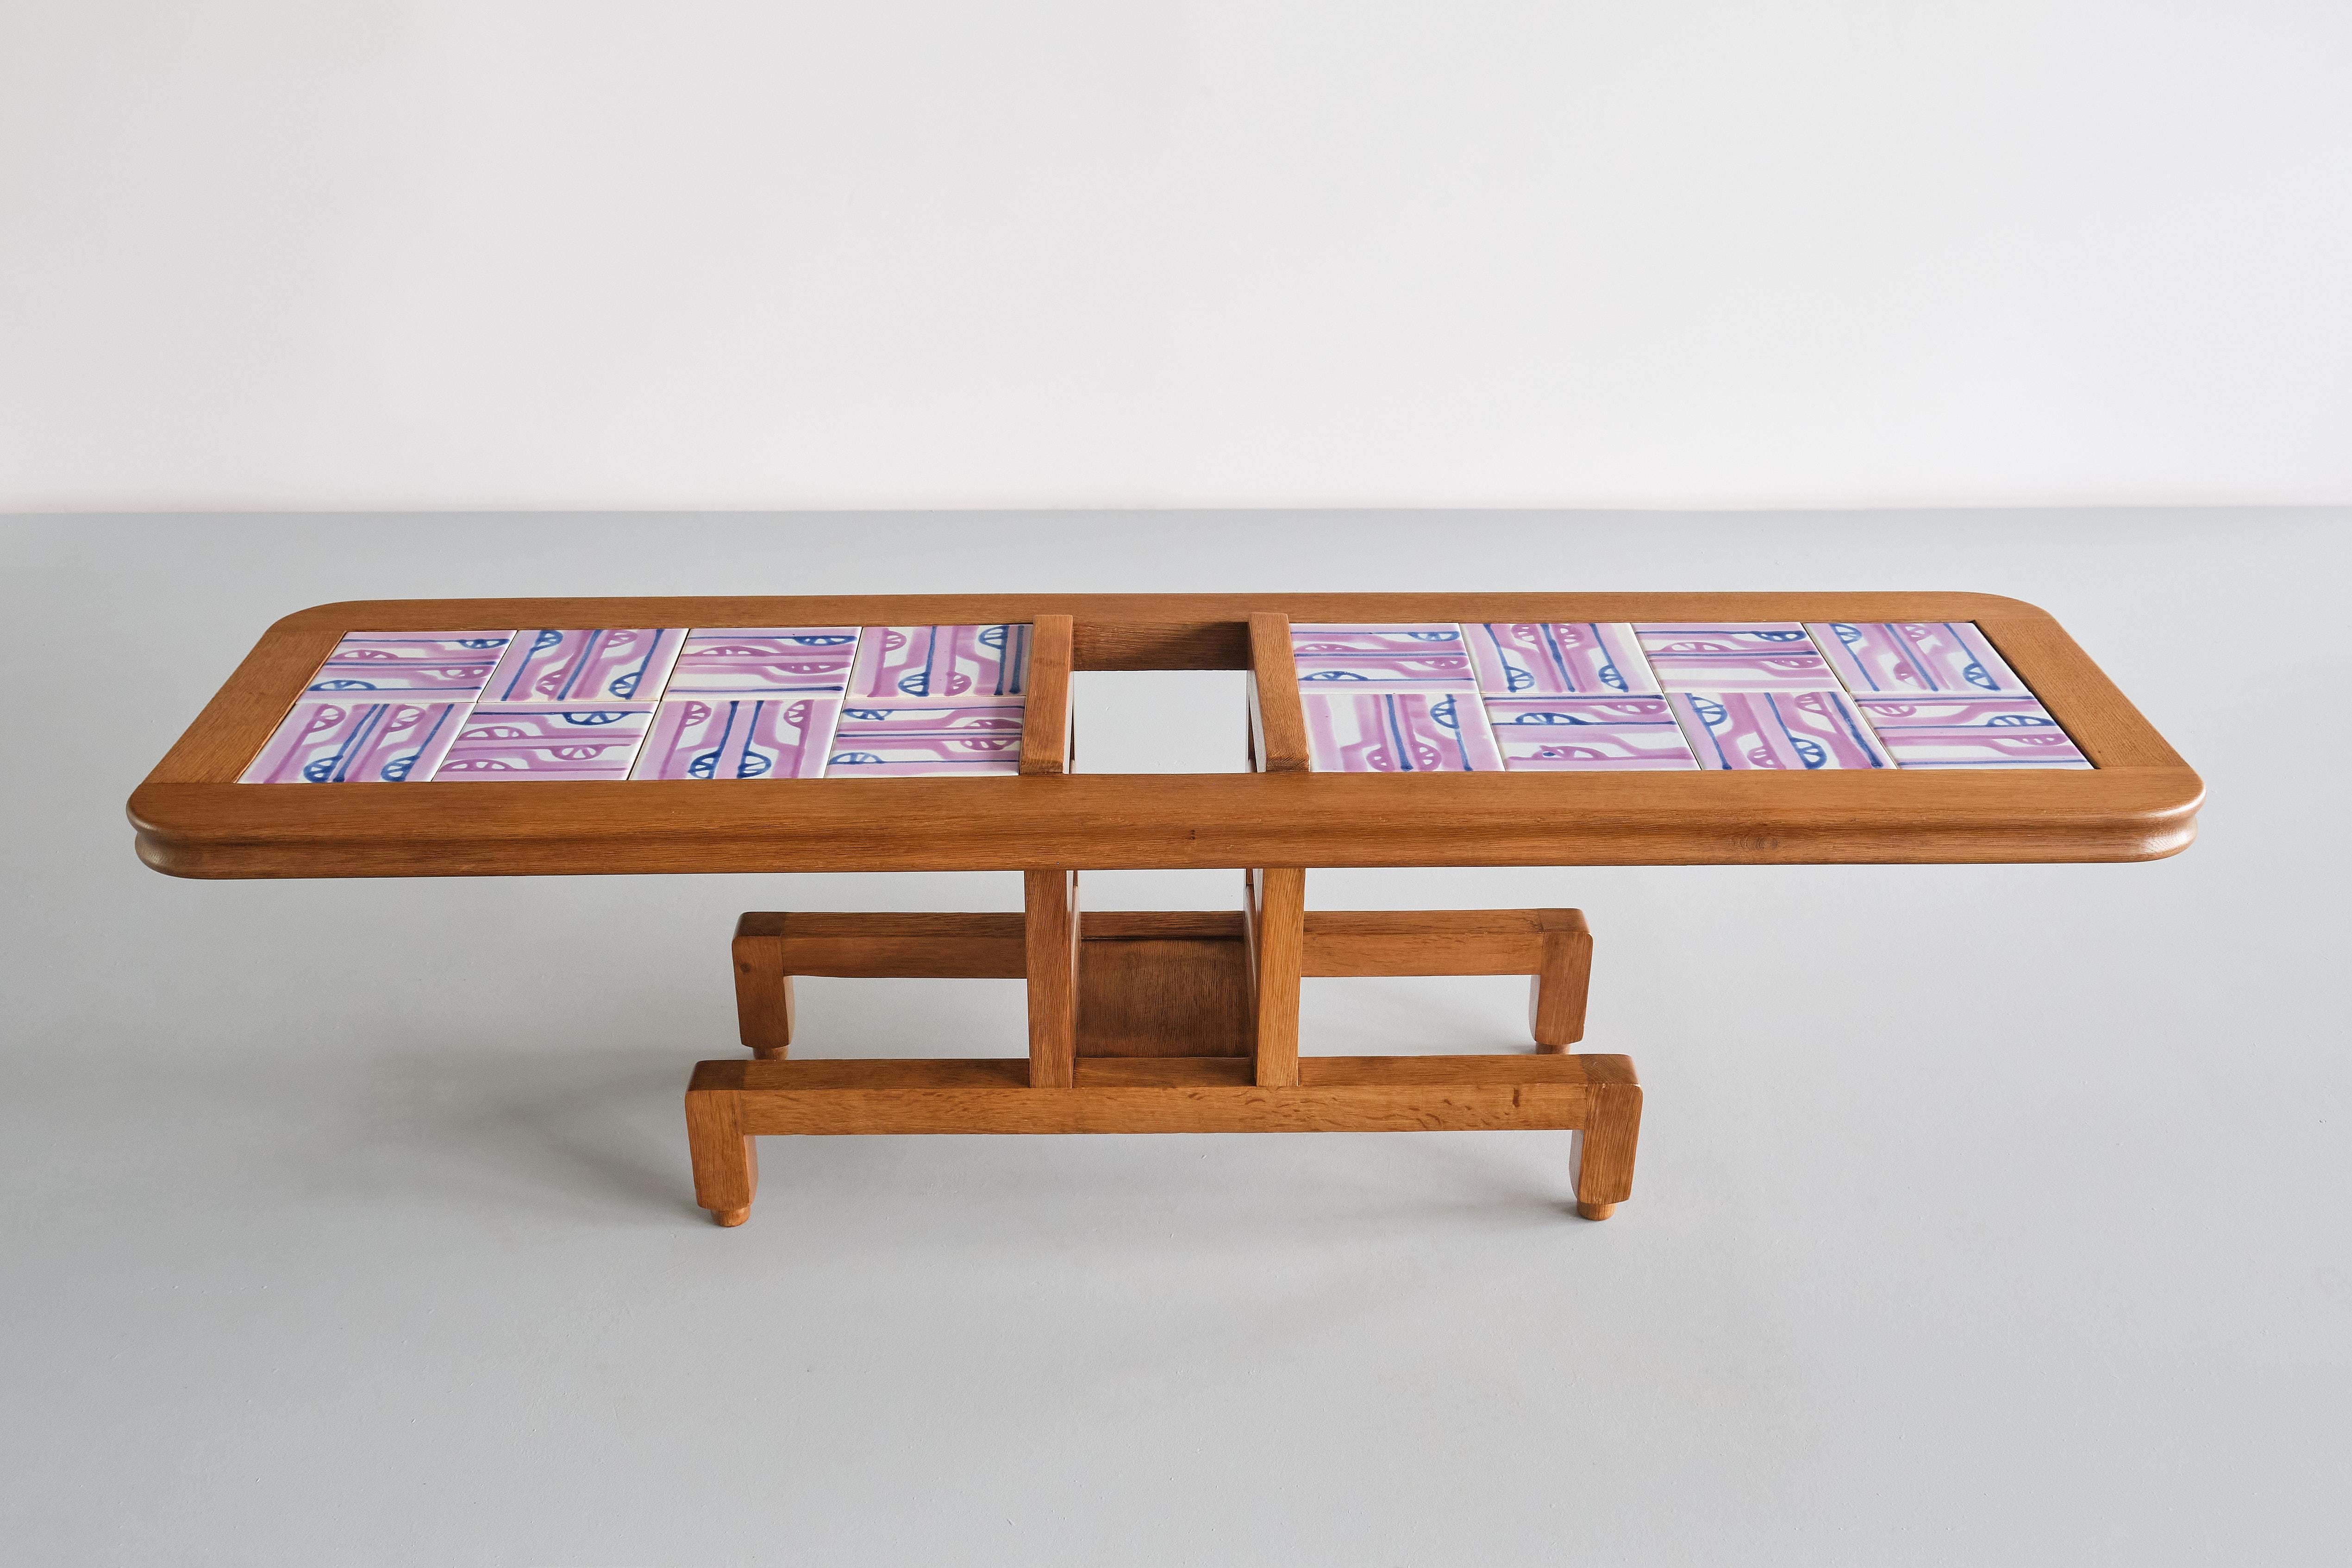 Cette étonnante table basse rectangulaire a été conçue par Jacques Chambron et Robert Guillerme dans les années 1960. Il a été produit par leur entreprise Votre Maison dans le nord de la France. Ce modèle particulier, baptisé 